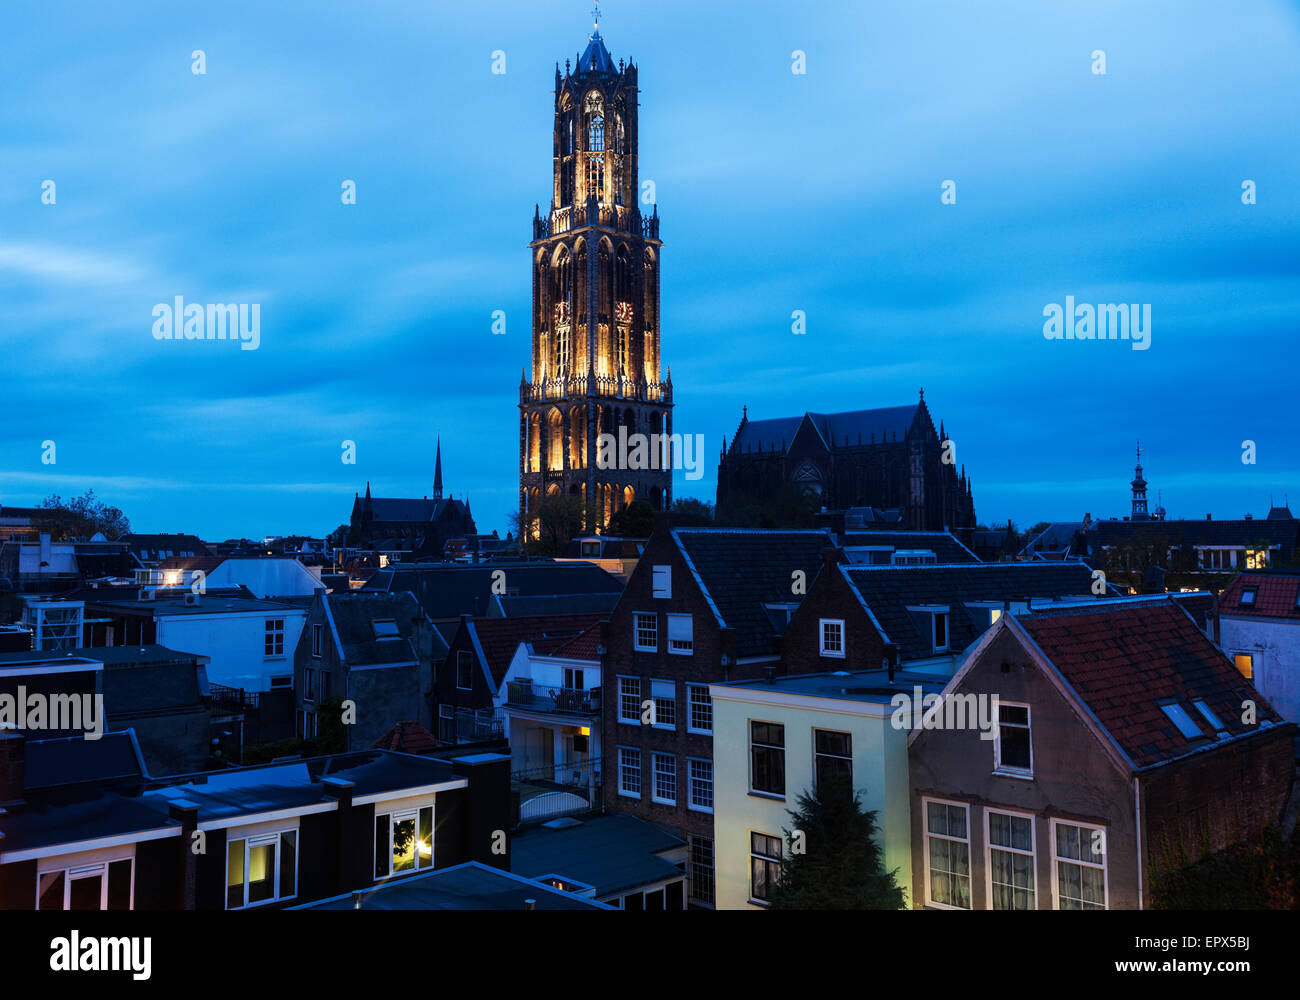 Niederlande, Utrecht, Dom Tower von Utrecht, Blick auf beleuchteten Turm in Stadt Stockfoto